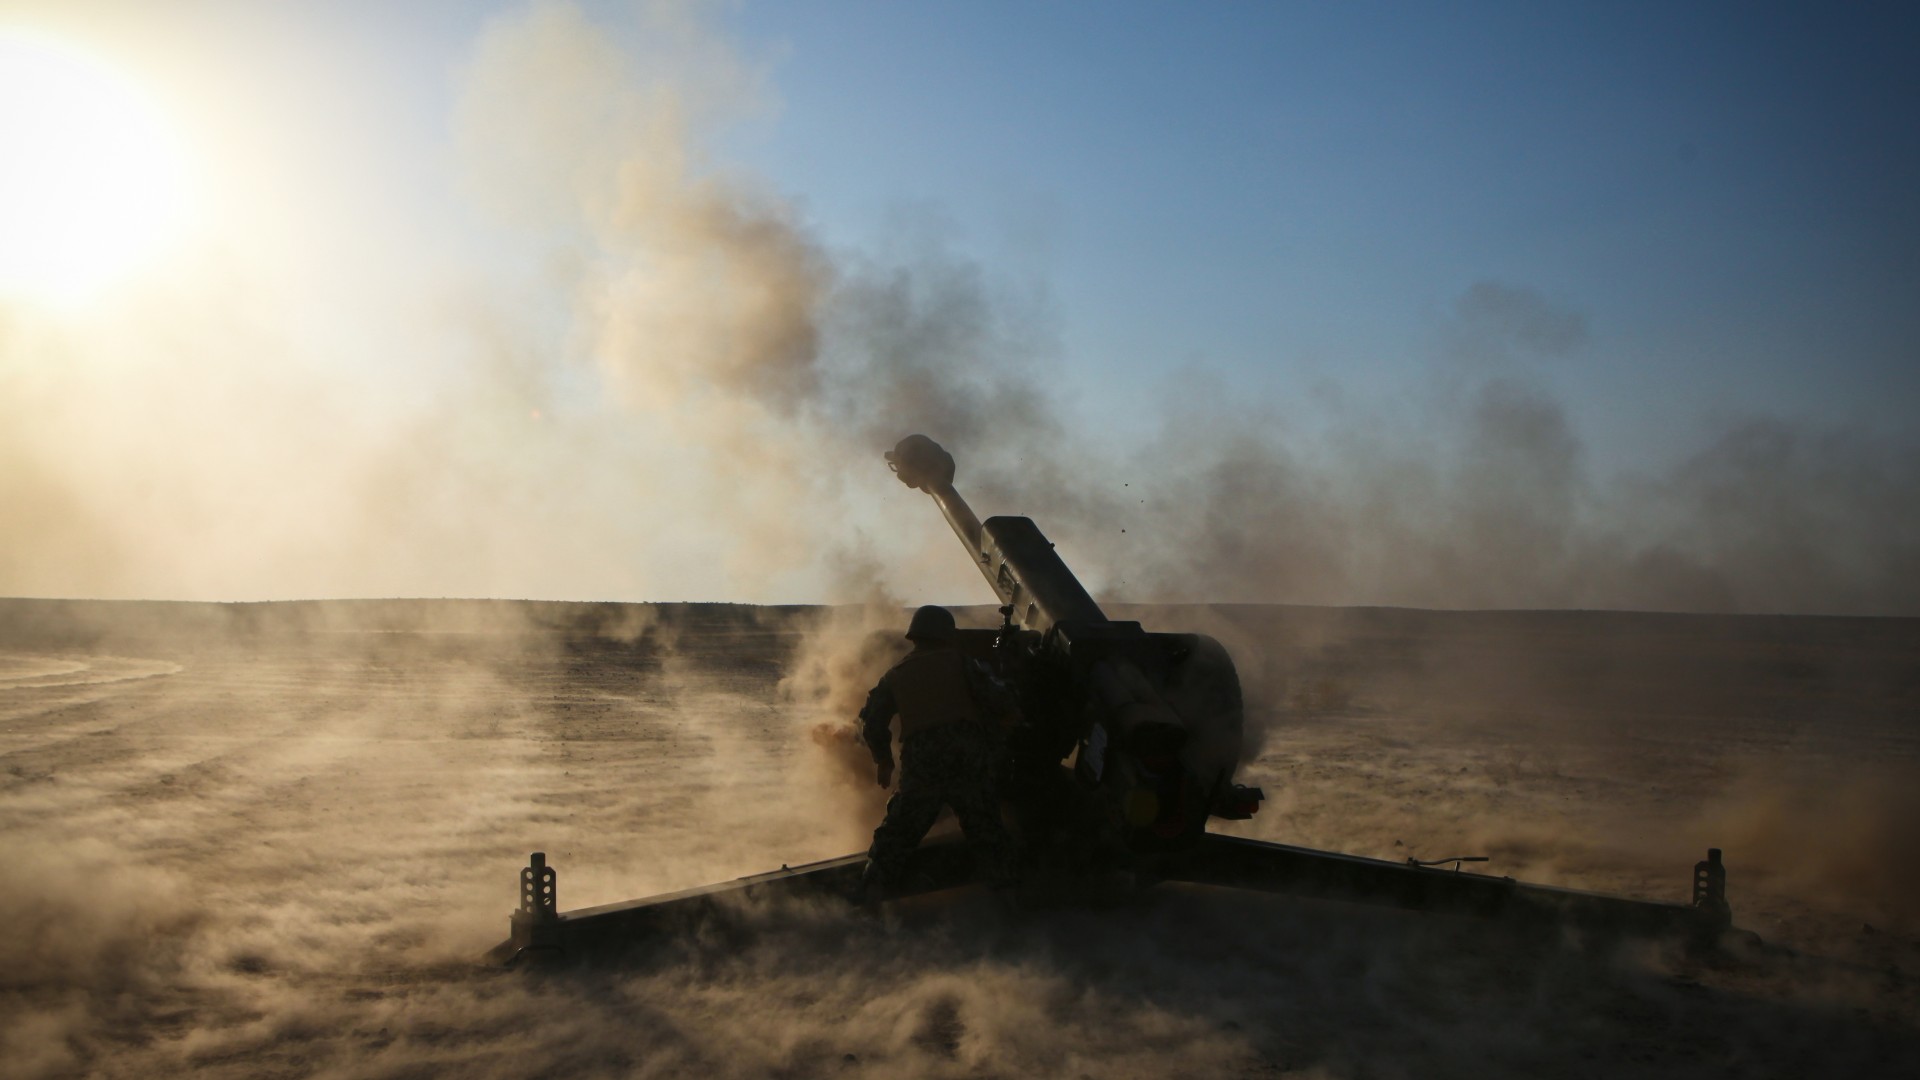 гаубица, Д-30, 122-мм, артиллерия, D-30, howitzer, 2A18, 122-mm, artillery, weapon, firing, desert, sand (horizontal)